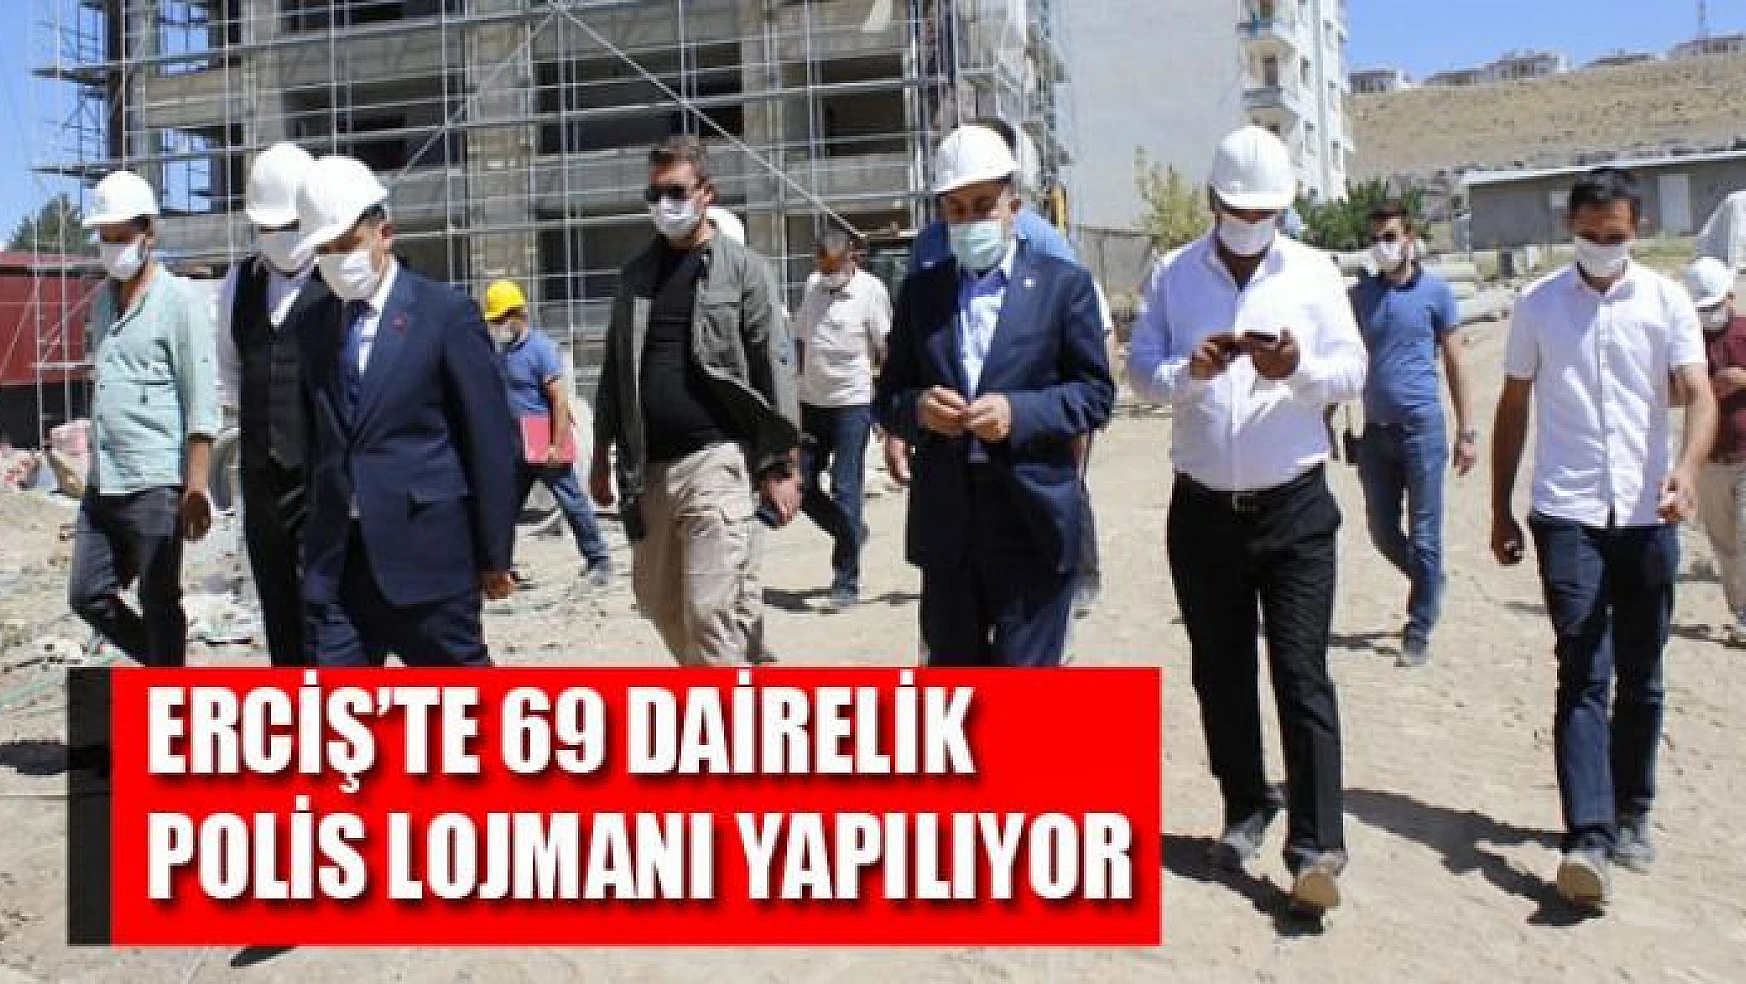 Erciş'te 69 dairelik polis lojmanı yapılıyor